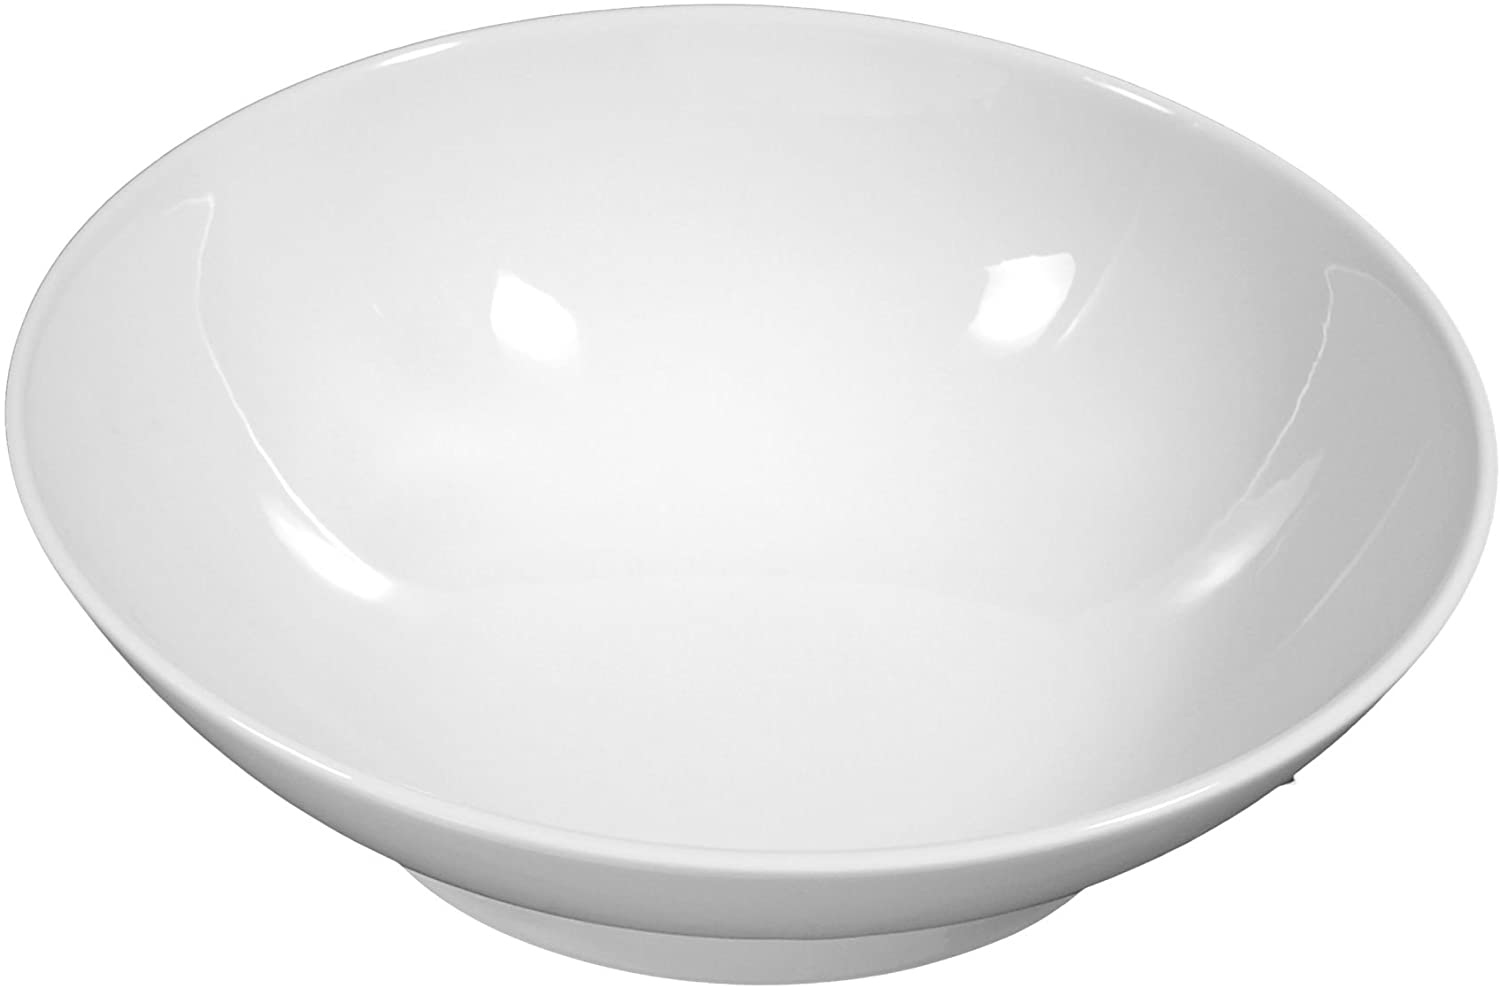 Bowl 30 cm Buffet/Gourmet White Universal 00006 by Seltmann Weiden